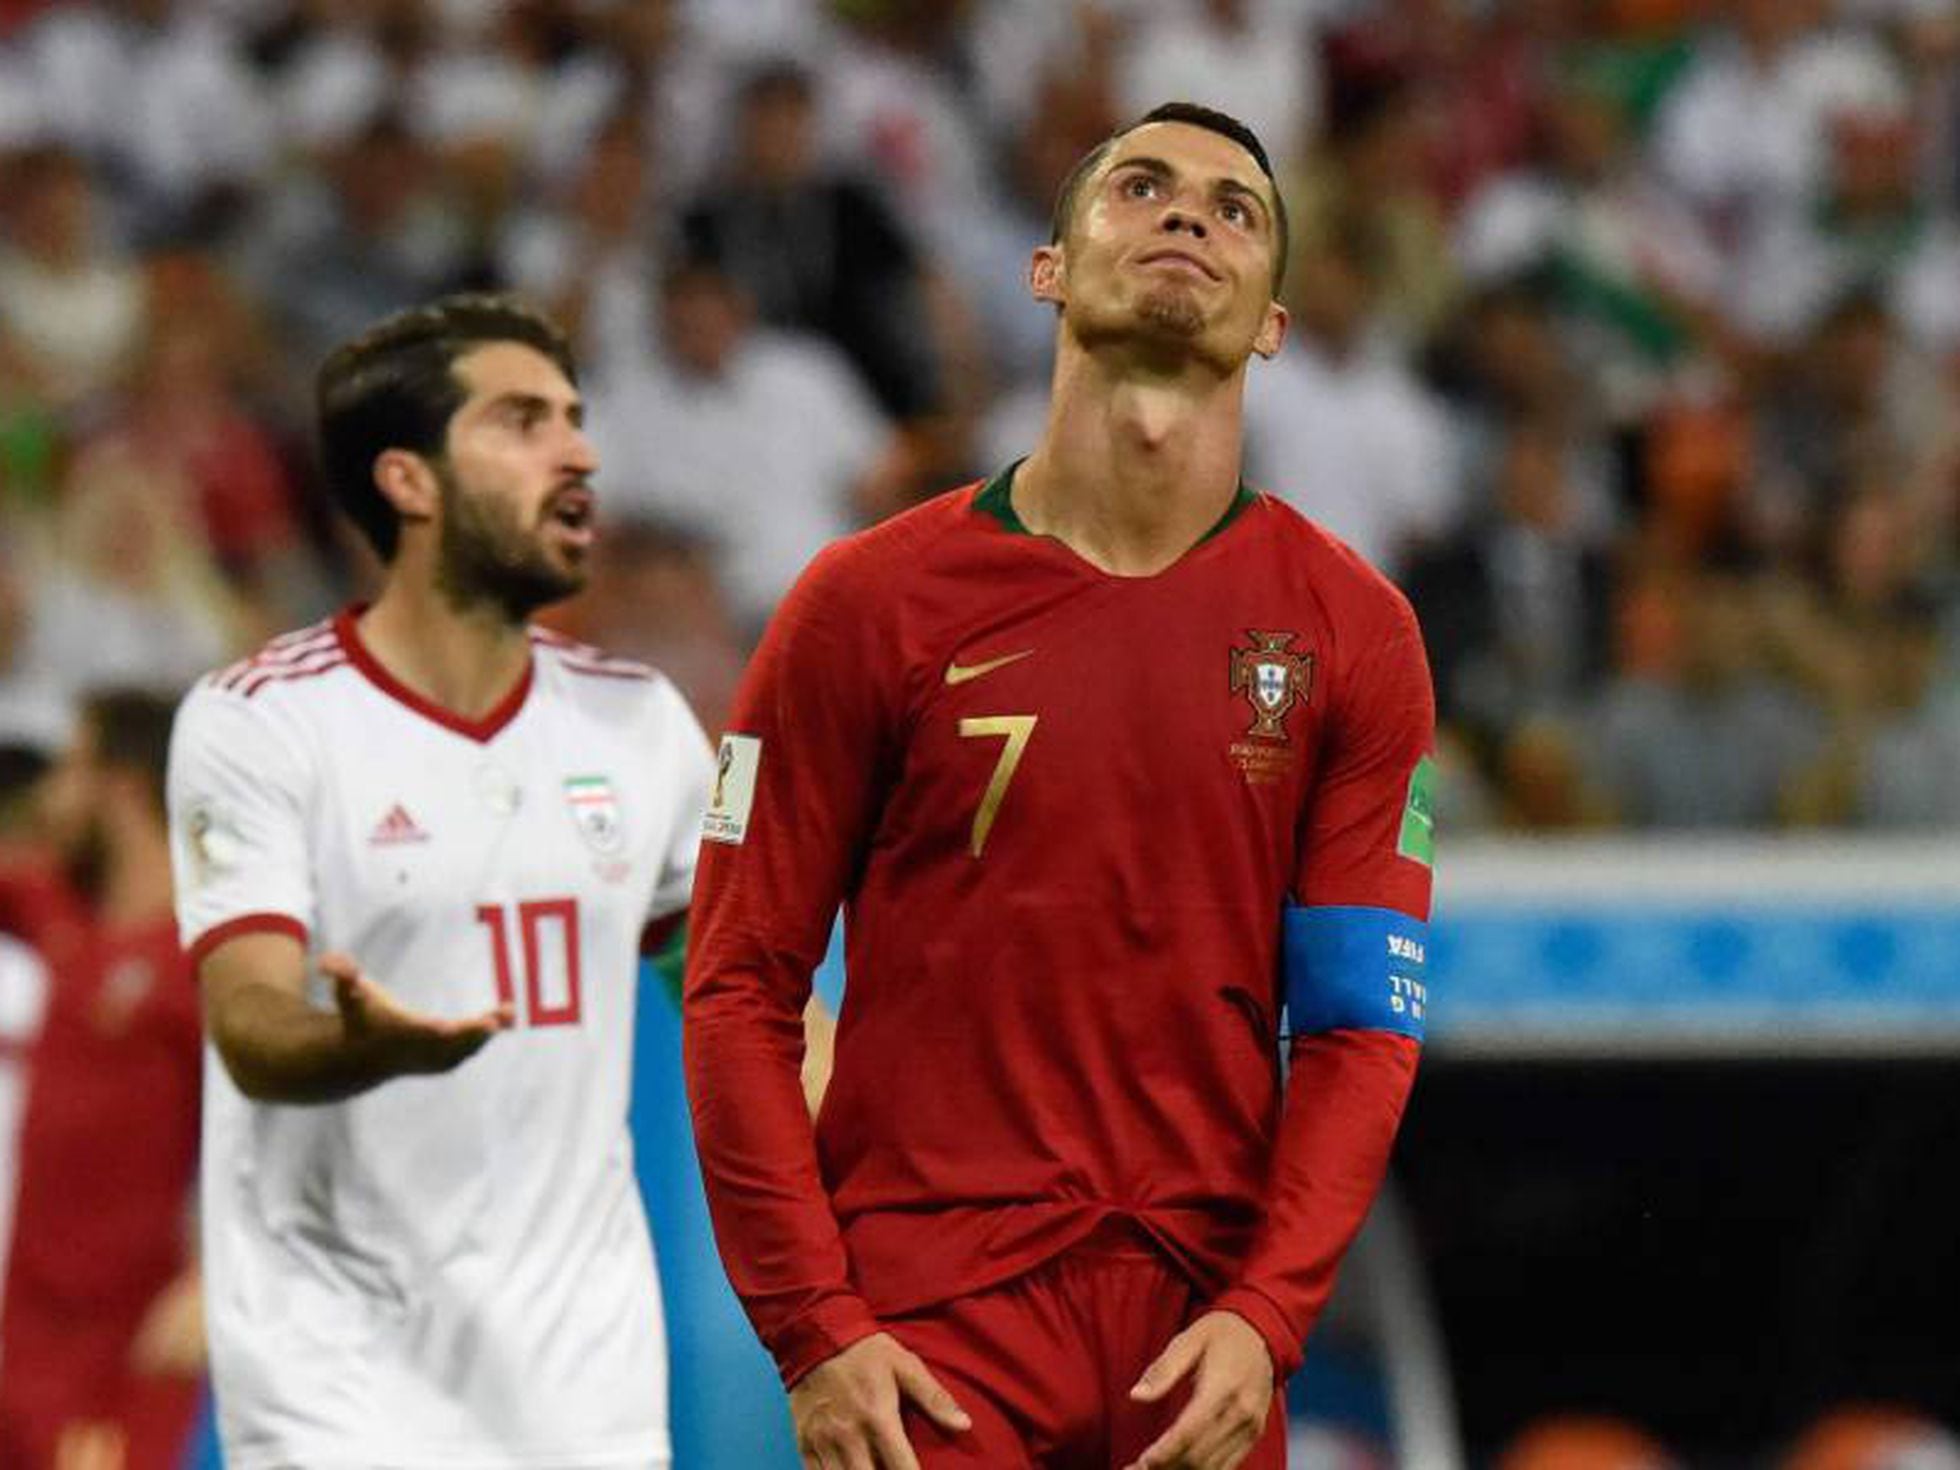 Cristiano Ronaldo perde pênalti e Portugal sofre em empate com o Irã, Esportes